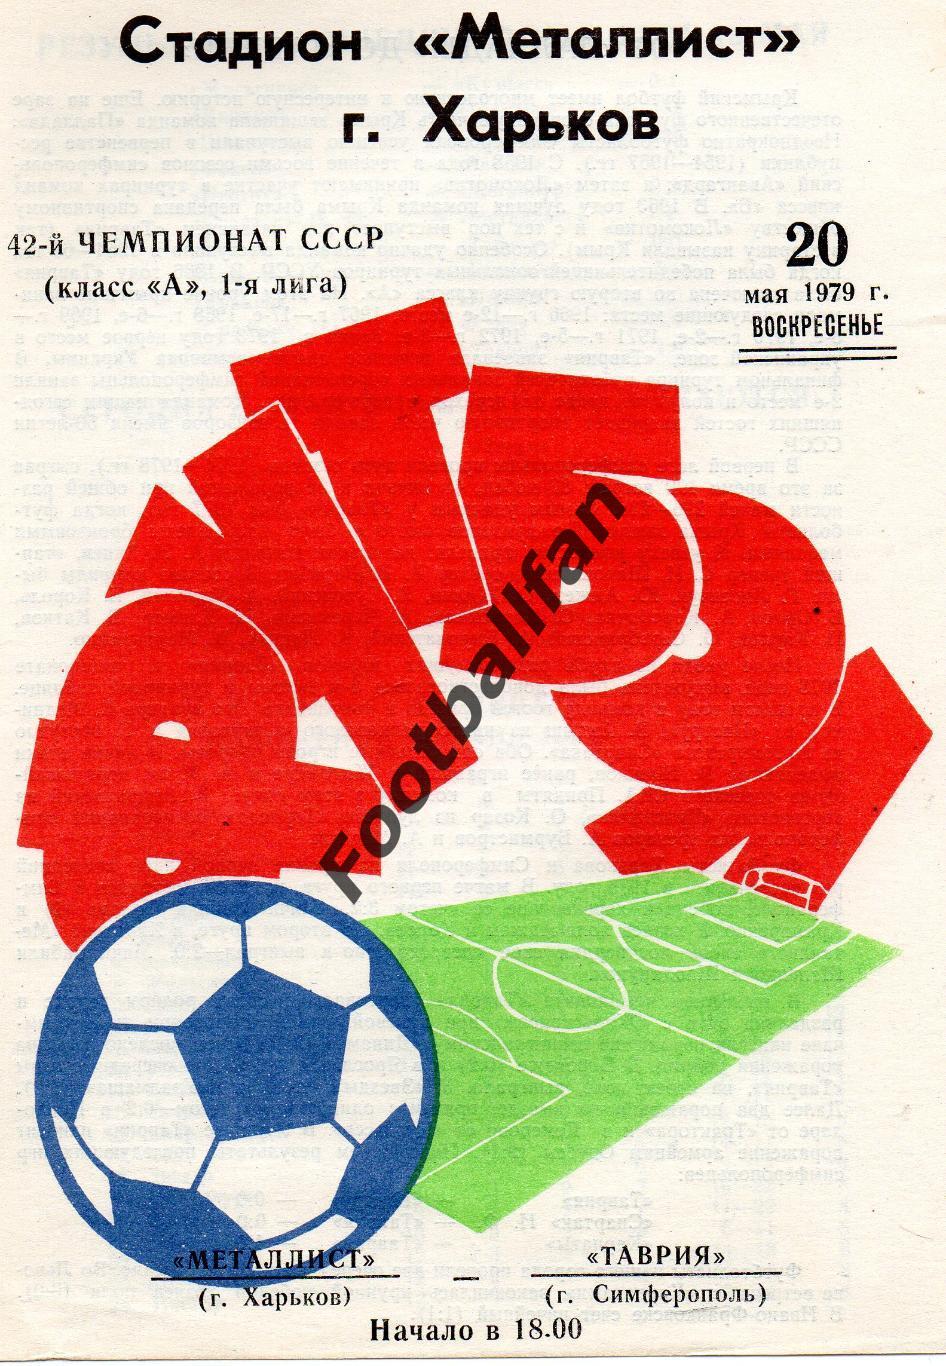 Металлист Харьков - Таврия Симферополь 20.05.1979